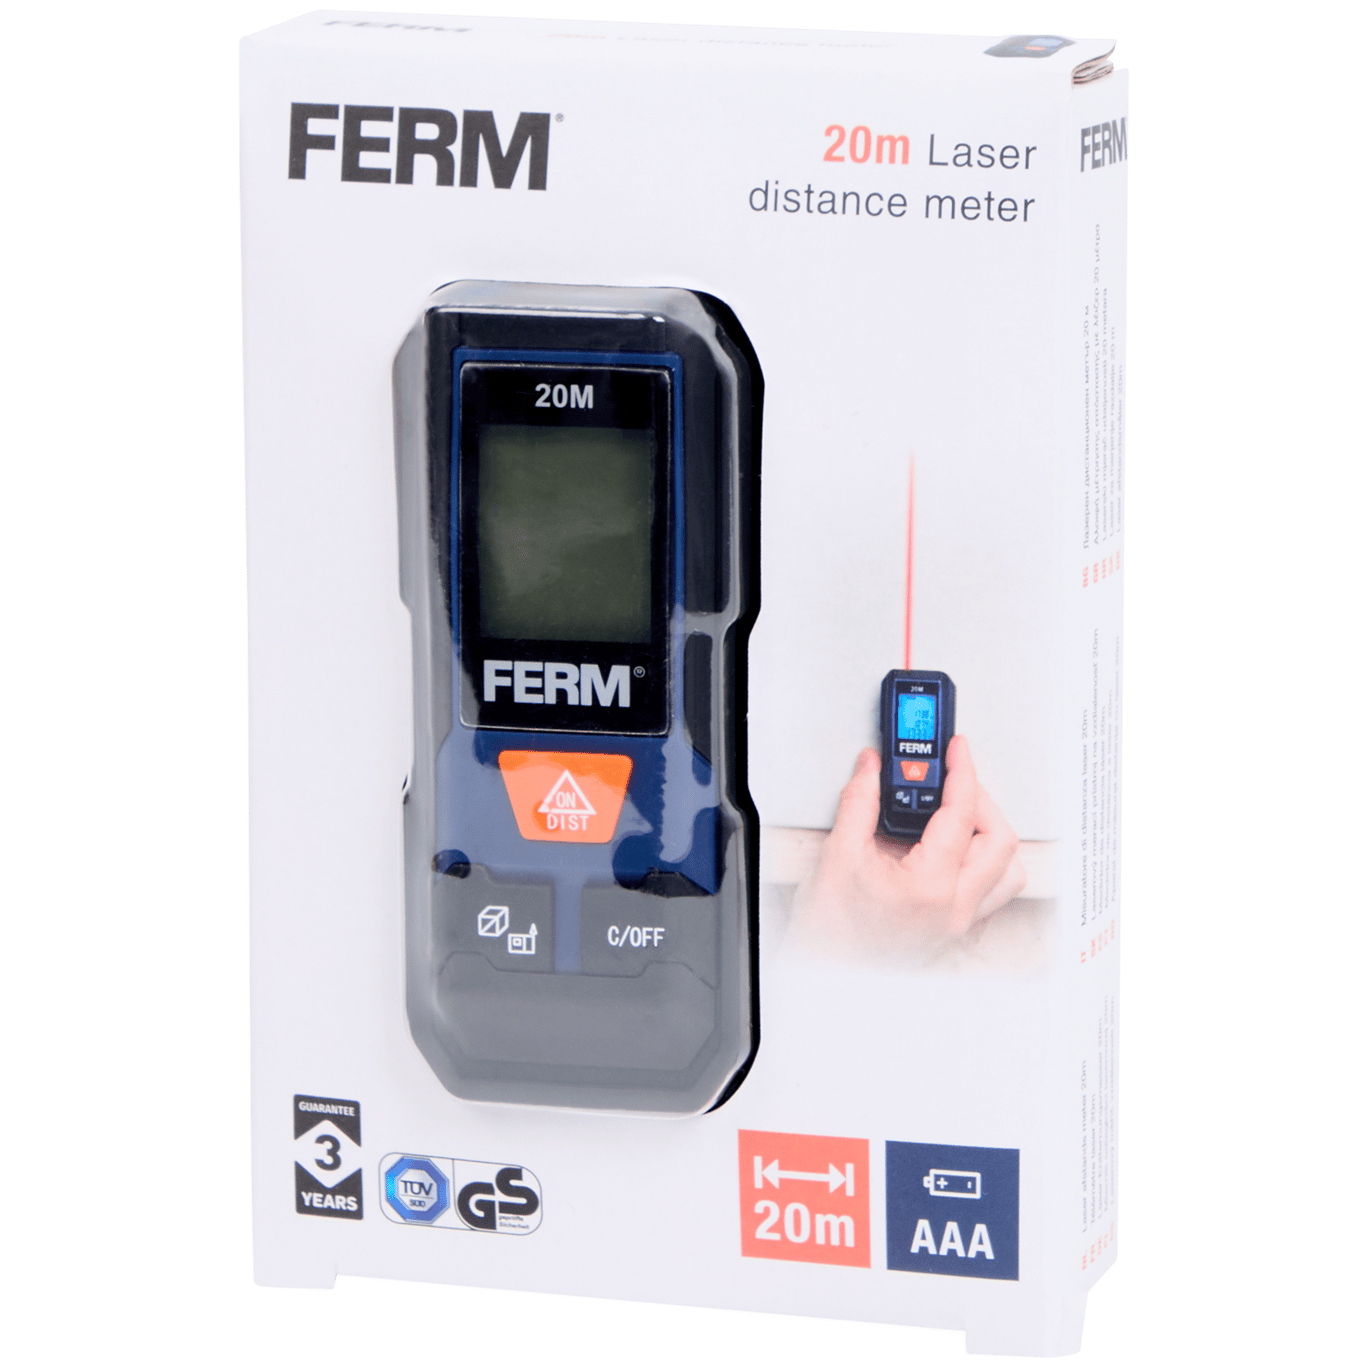 FERM lasermeter